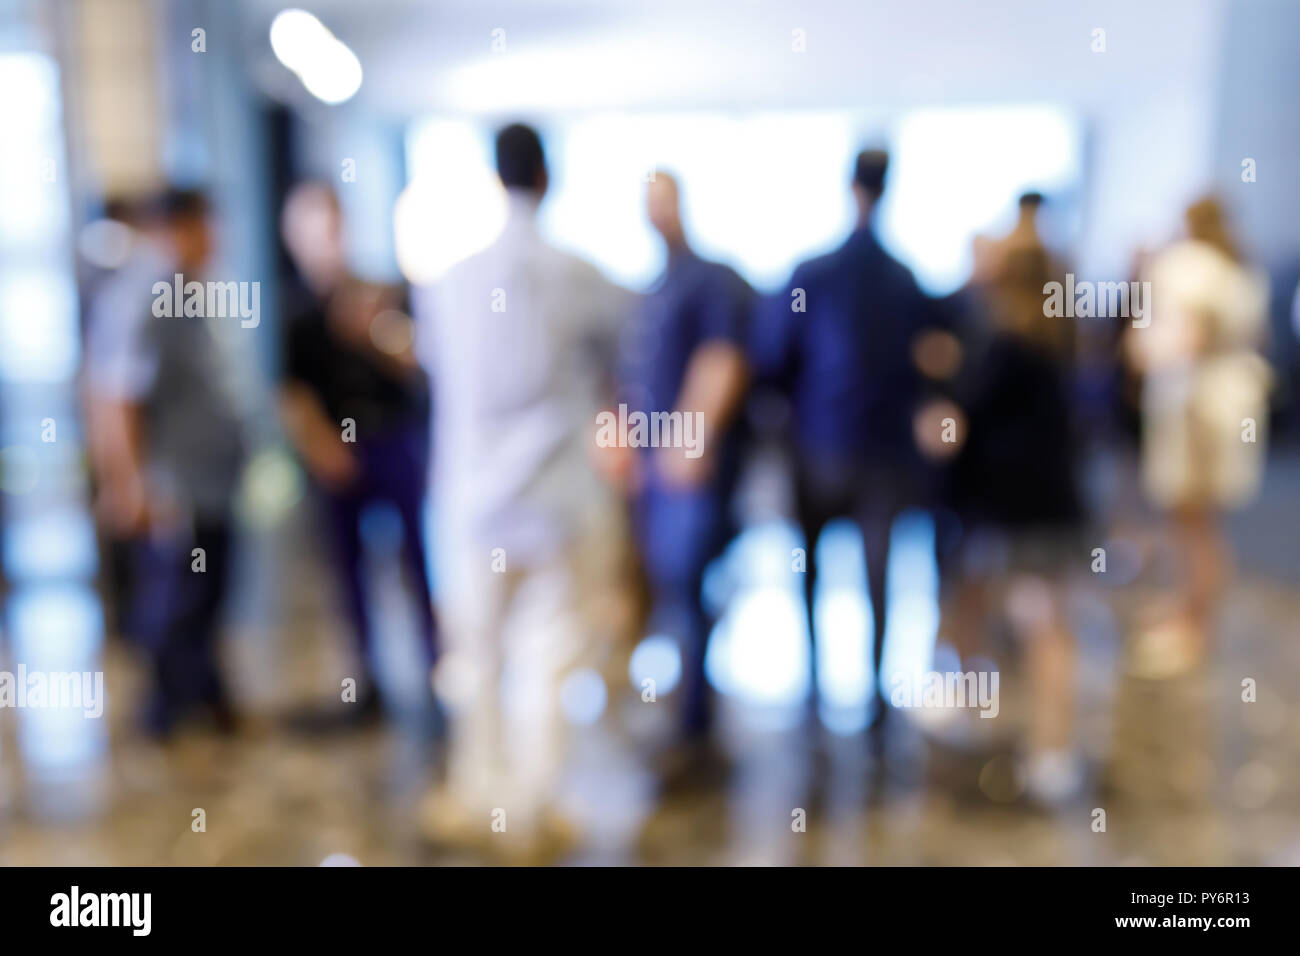 Abstract blur Menschen in Pressekonferenz Ereignis oder Corporate messe Seminar Tagung party Stockfoto